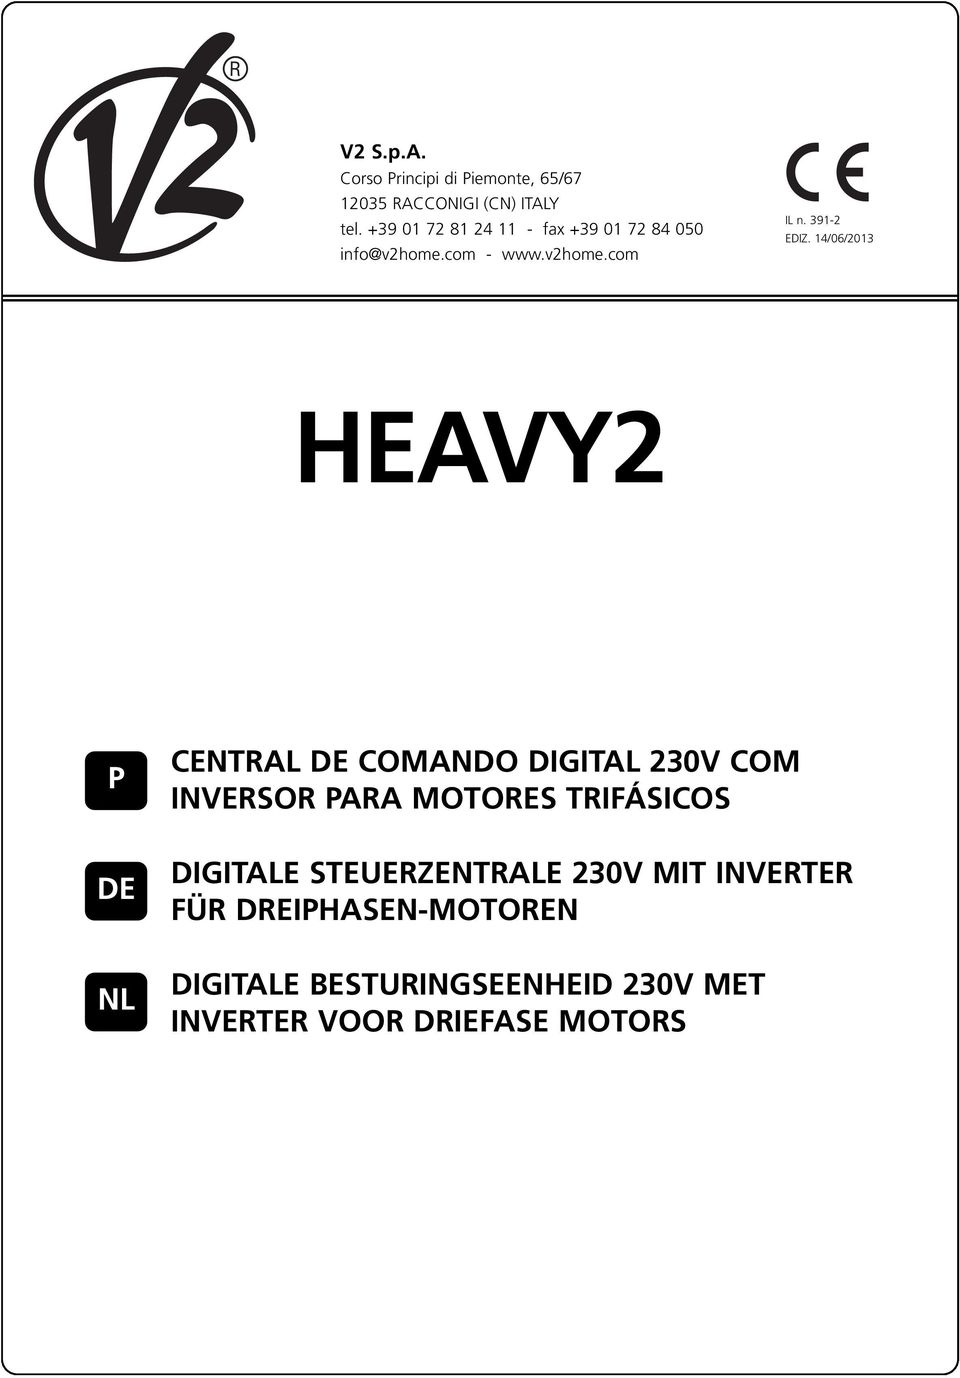 14/06/2013 HEAVY2 P DE NL CENTRAL DE COMANDO DIGITAL 230V COM INVERSOR PARA MOTORES TRIFÁSICOS